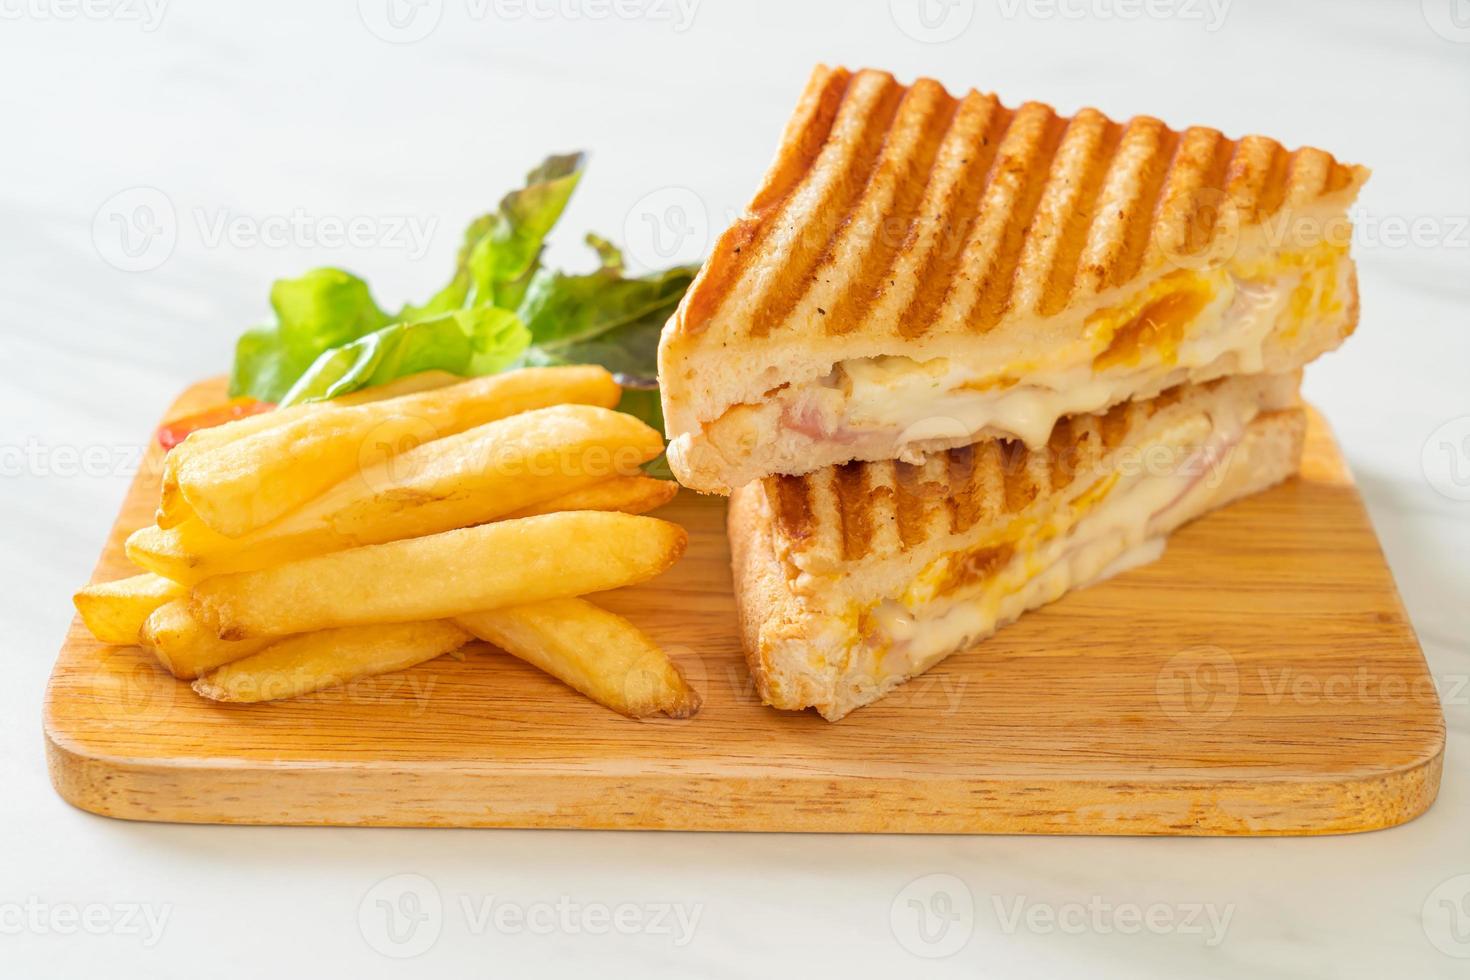 sándwich de jamón y queso con huevo y patatas fritas foto